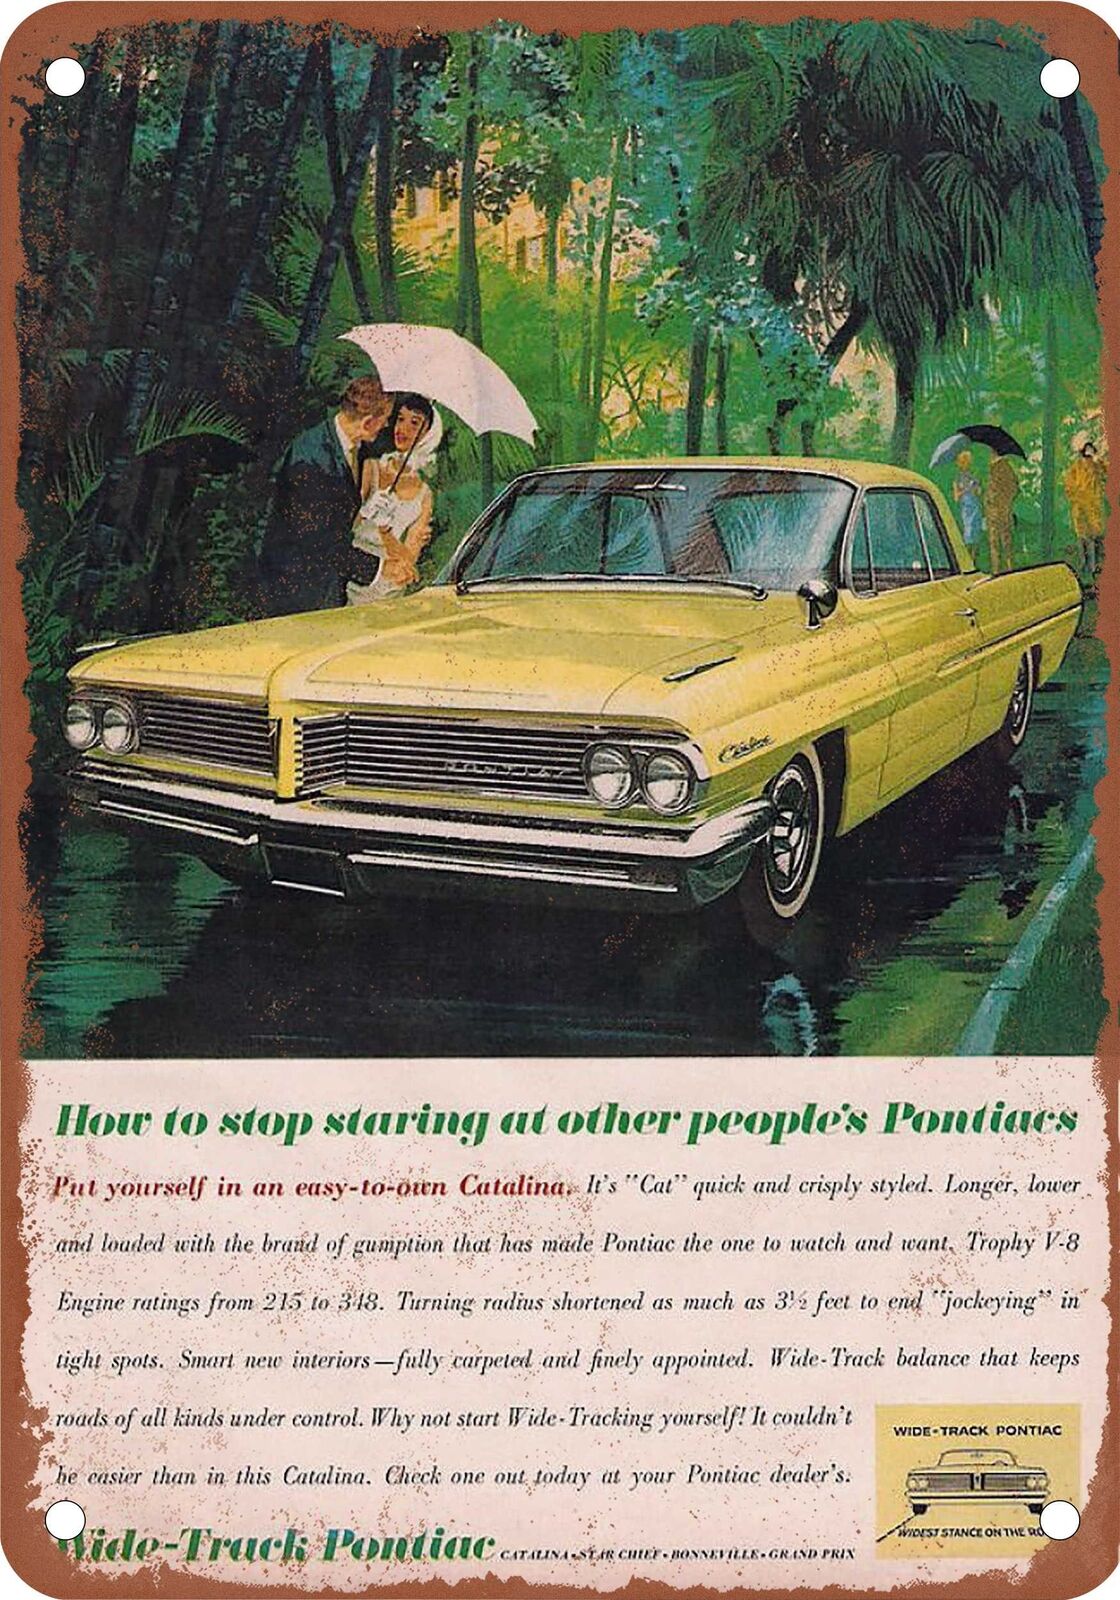 METAL SIGN - 1962 Pontiac Vintage Ad 03 - Old Retro Rusty Look